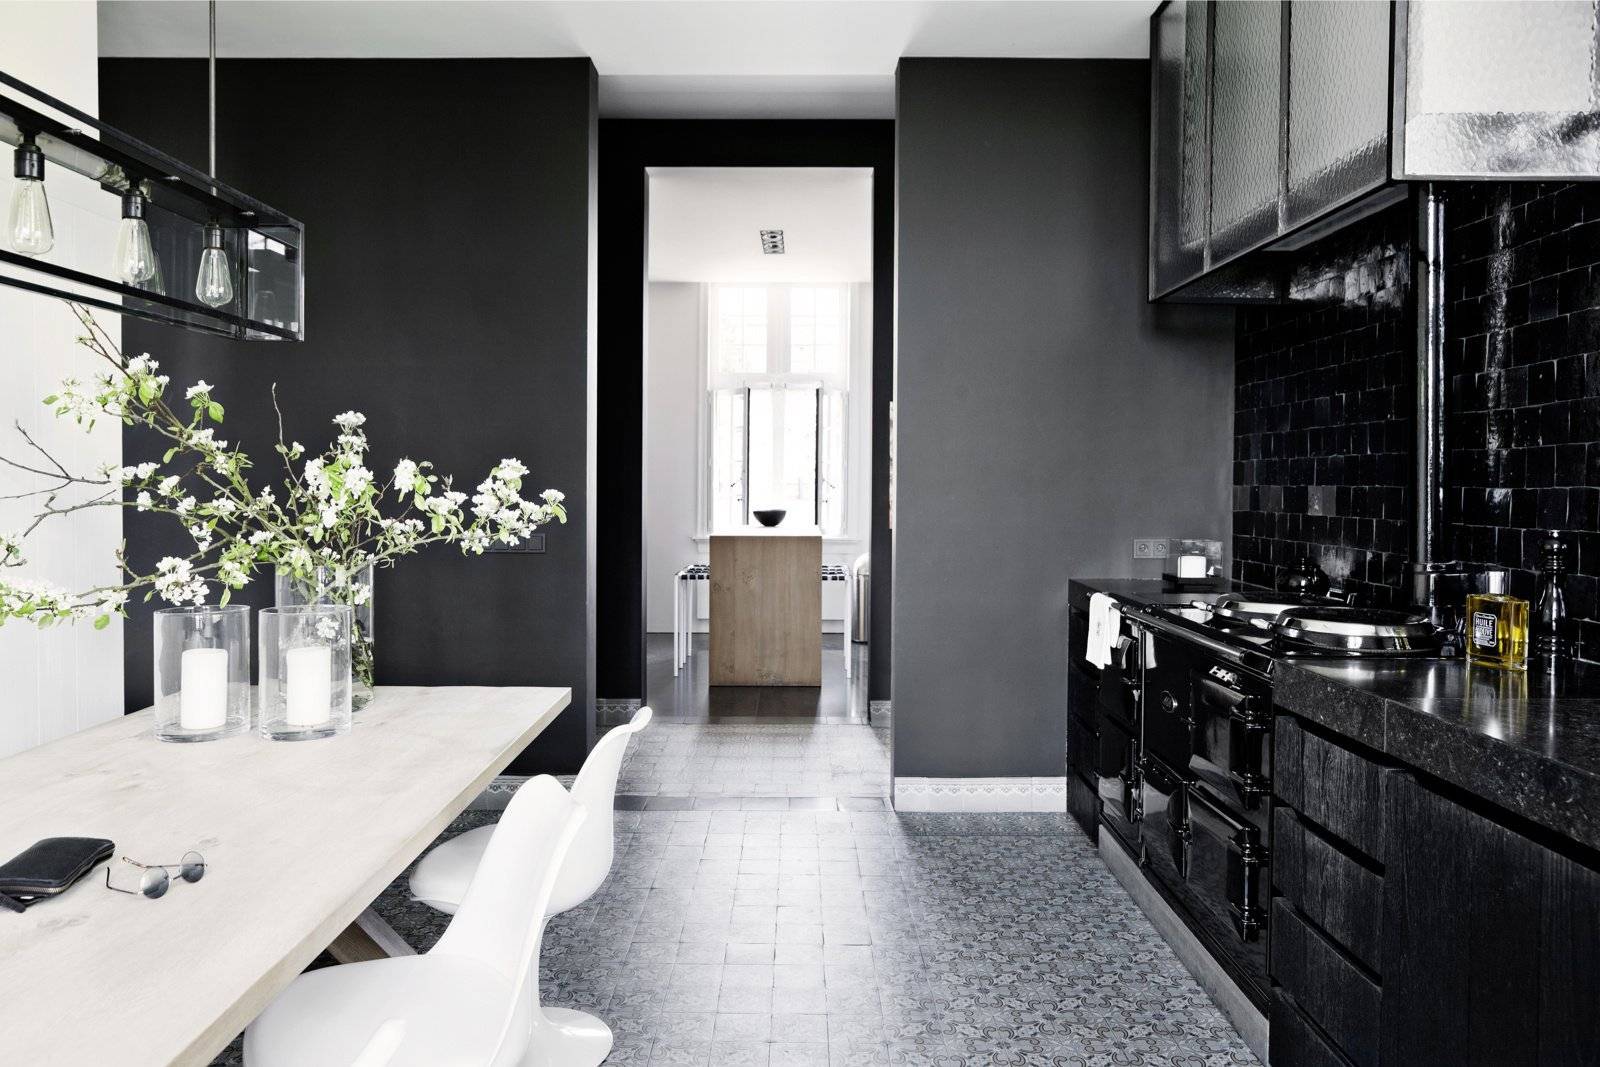 Дизайн чёрной кухни: особенности интерьера кухонного помещения в тёмных тонах, применение ярких акцентов